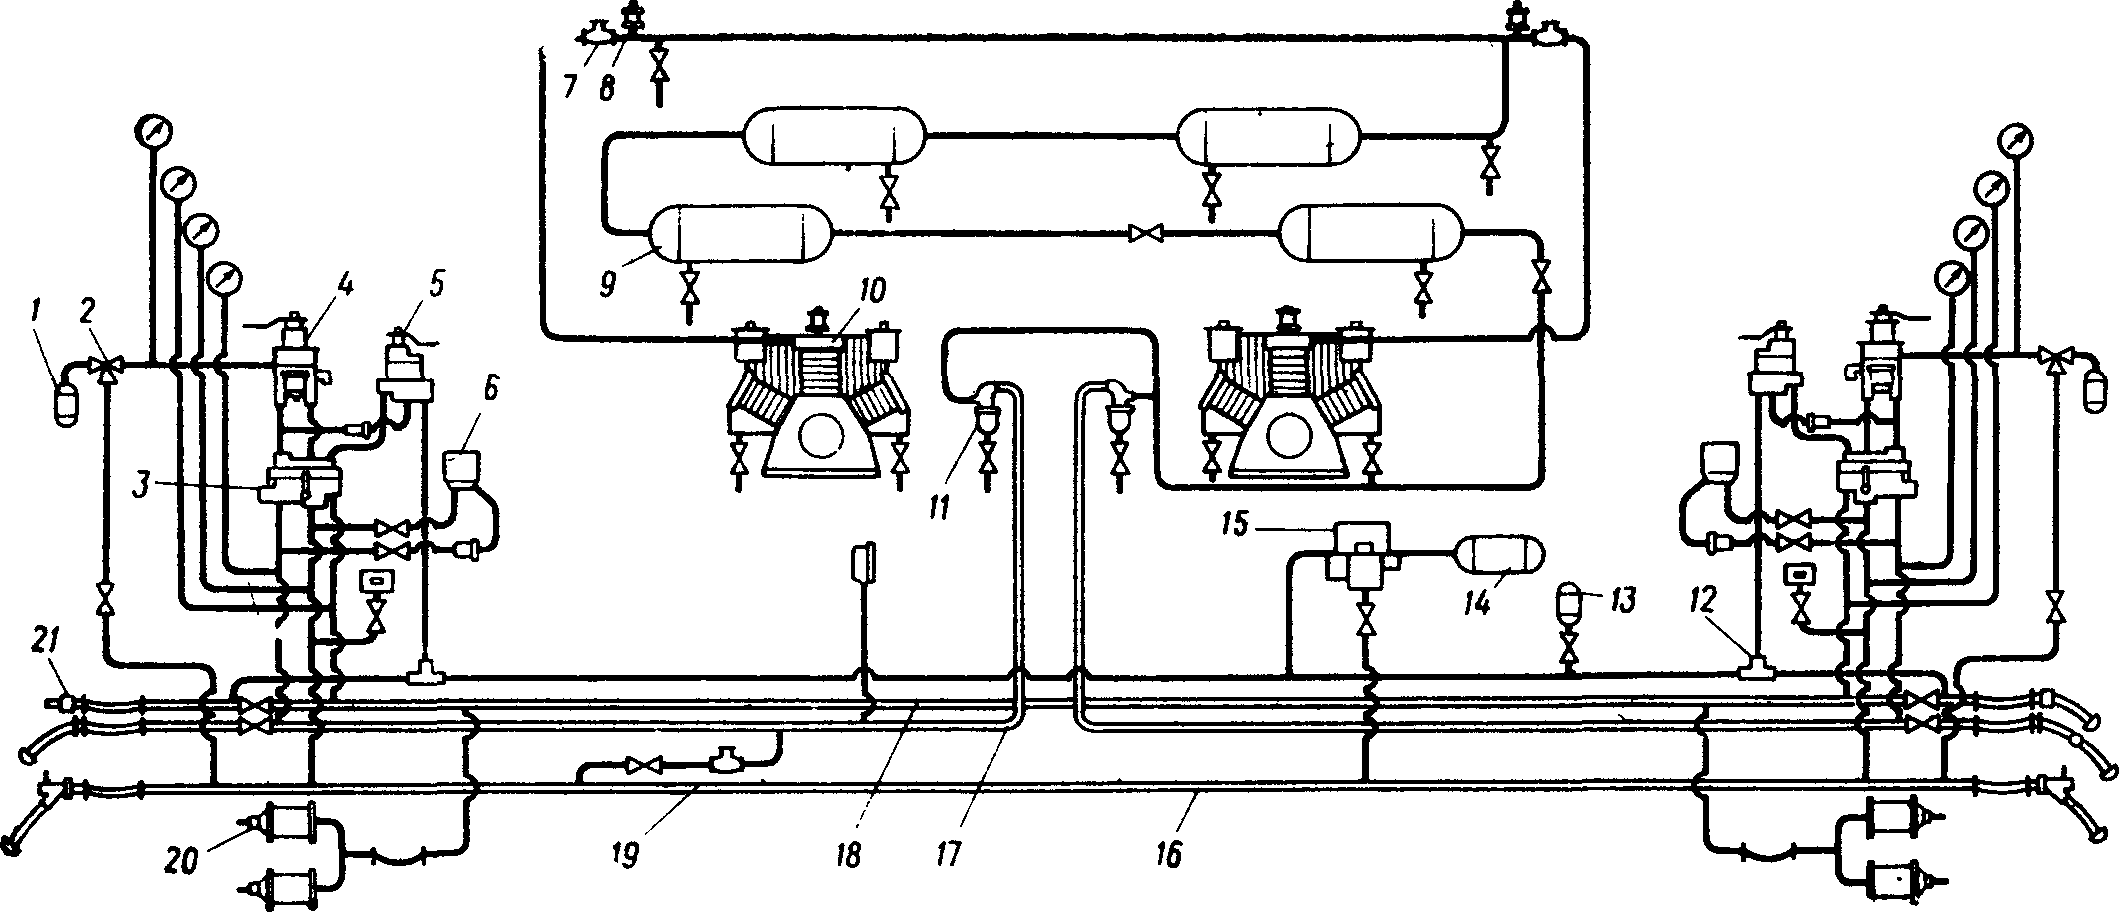 Схема тормозного оборудования электровоза ВЛ23